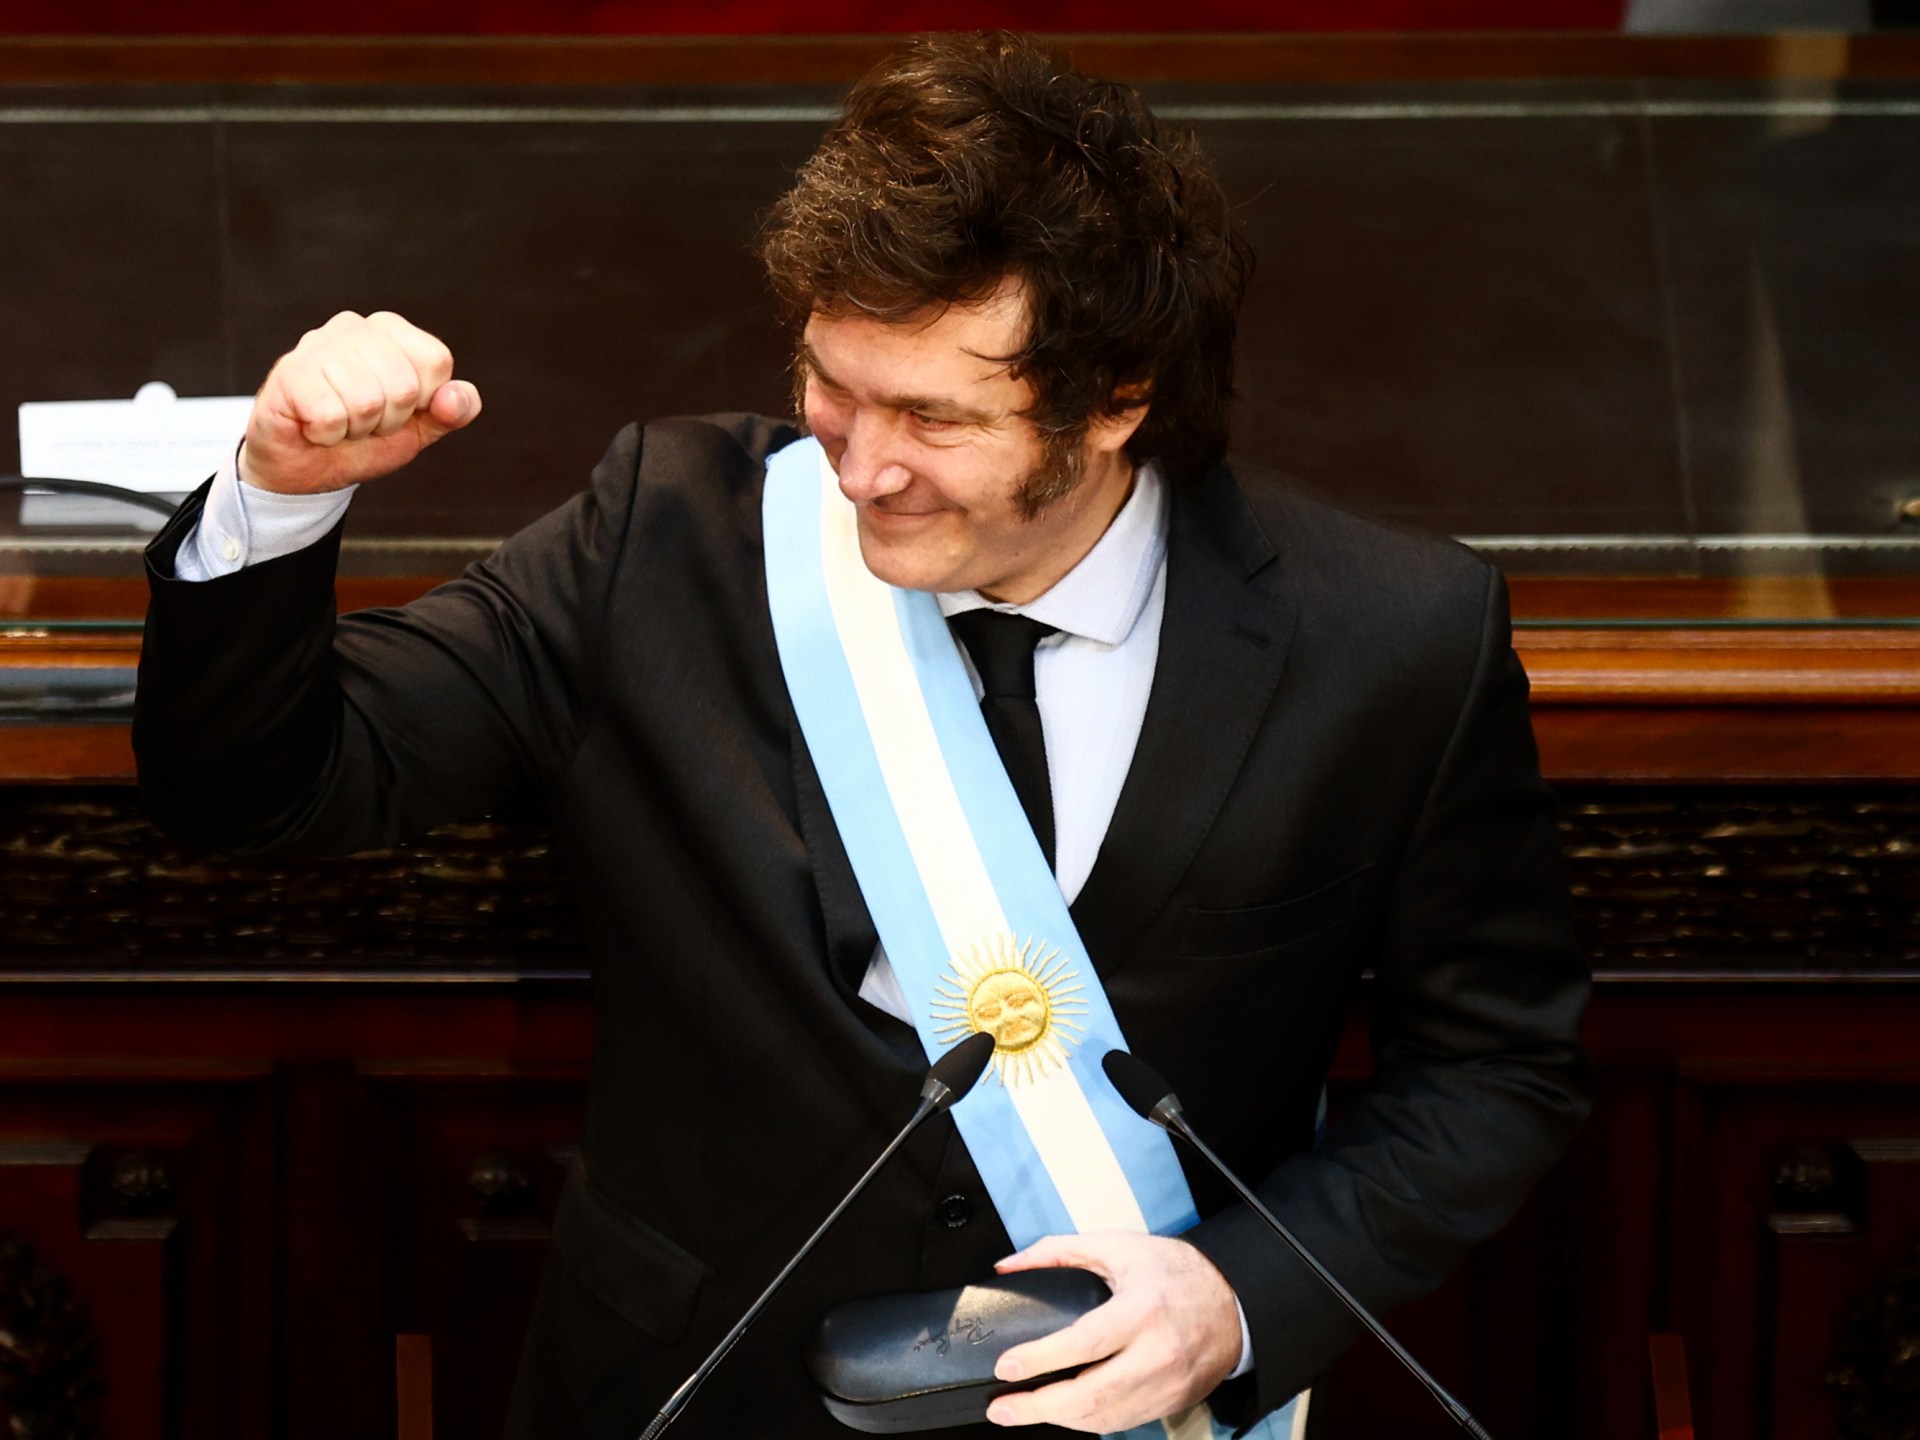 قانون لإعفاء الرجال من الأبوّة في الأرجنتين! | سياسة – البوكس نيوز